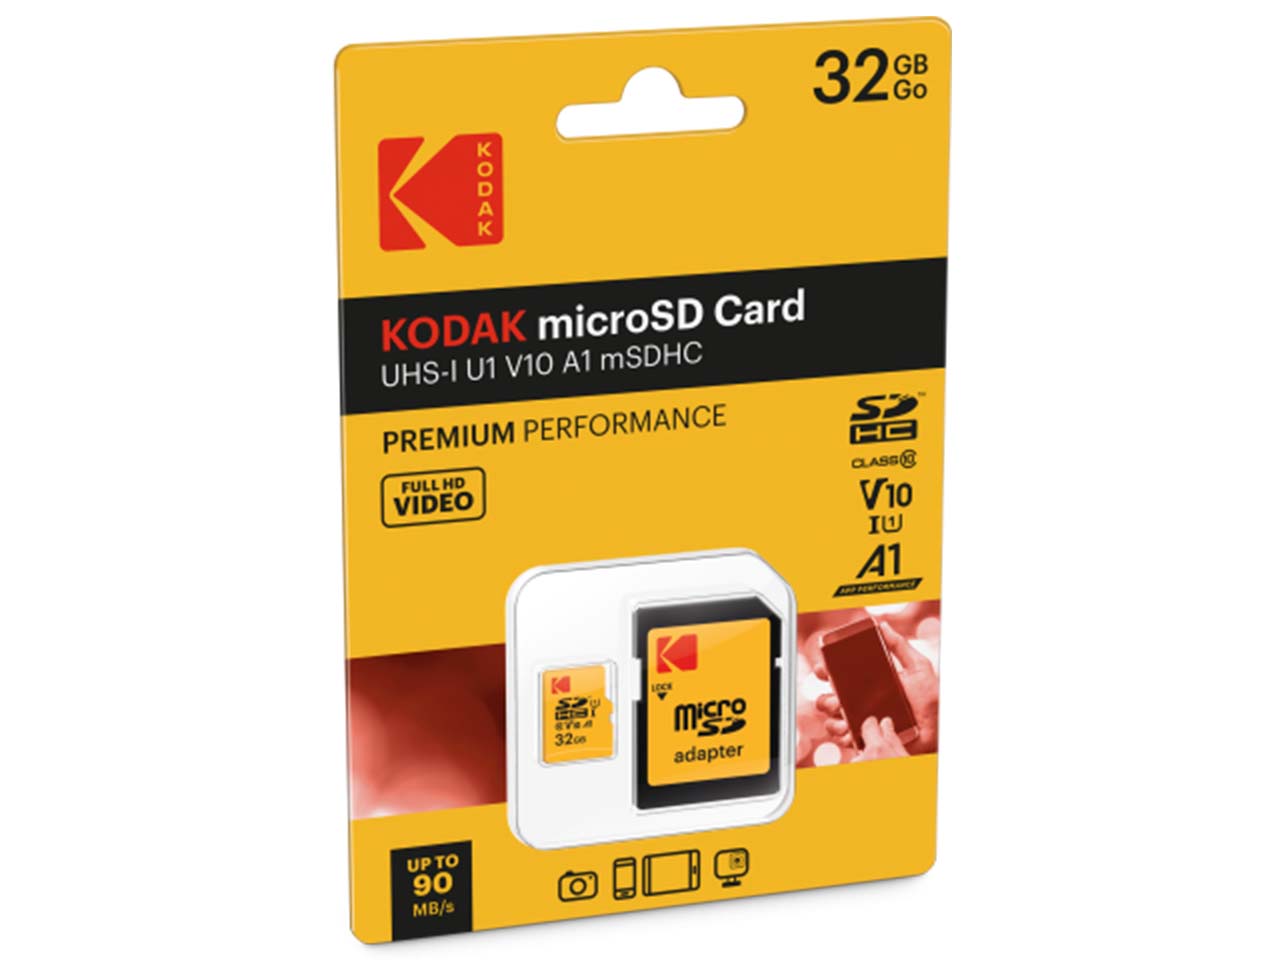 کارت حافظه microSDHC کداک استاندارد UHS-I U1 کلاس 10 سرعت 85MBps ظرفیت 32 گیگابایت